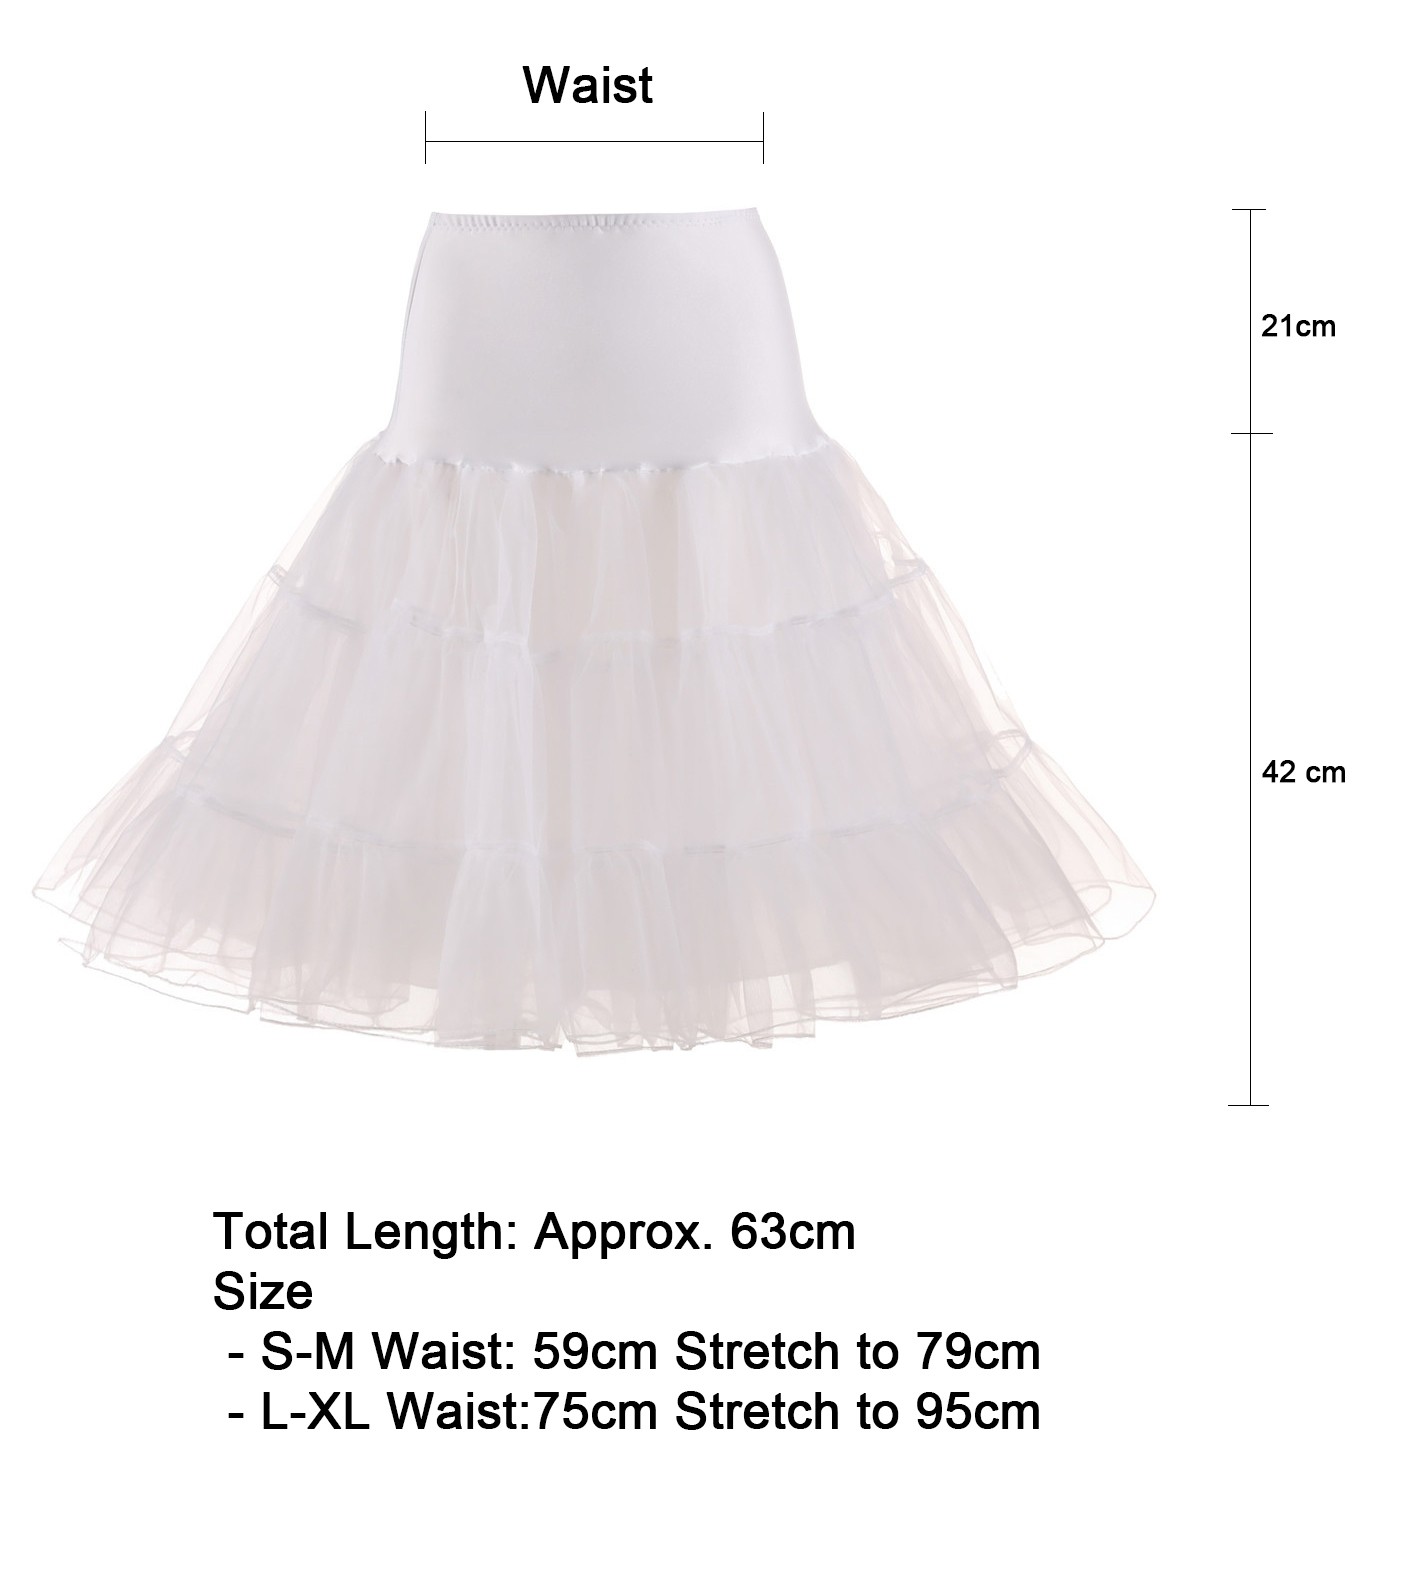 BEAUTELICATE Women’s 1950s Tutu Skirt Petticoat Vintage Crinoline Fullness White Wine Red Black Tea Length S M L 